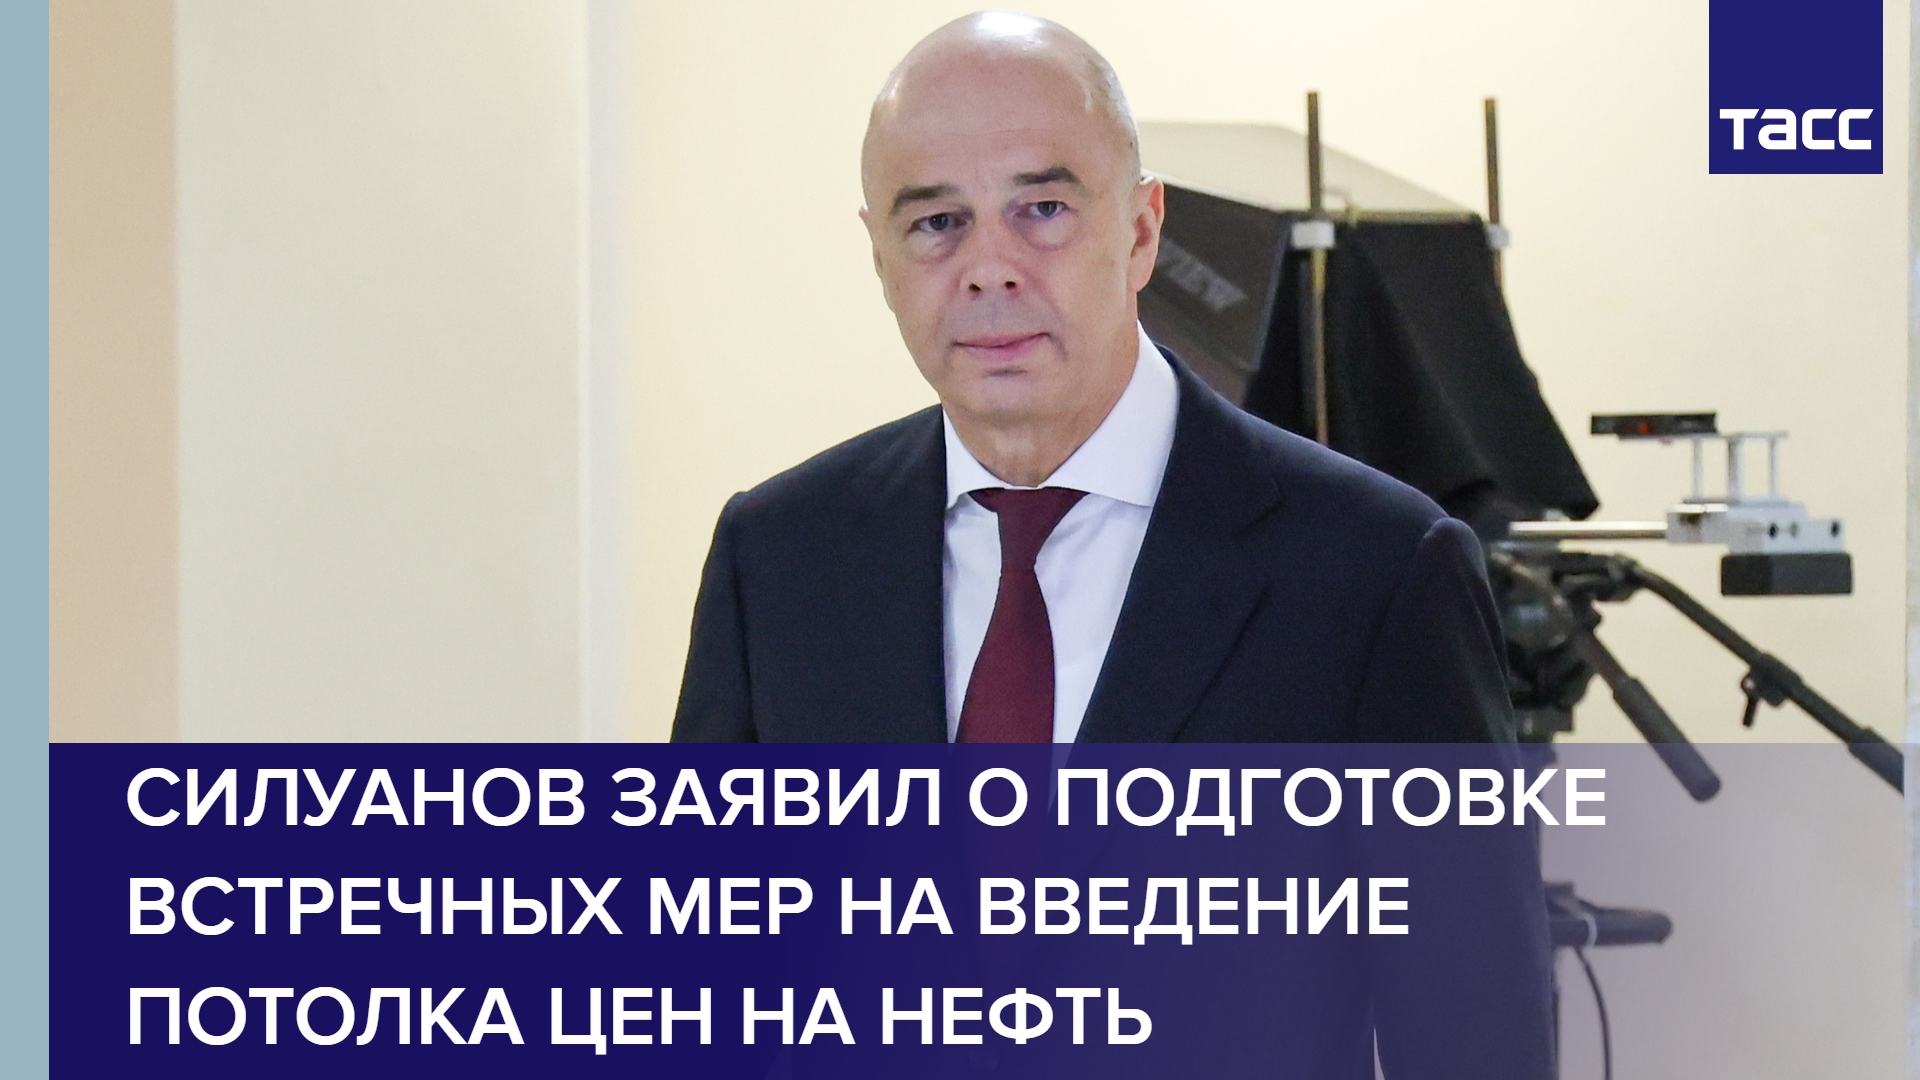 Силуанов заявил о подготовке встречных мер на введение потолка цен на нефть